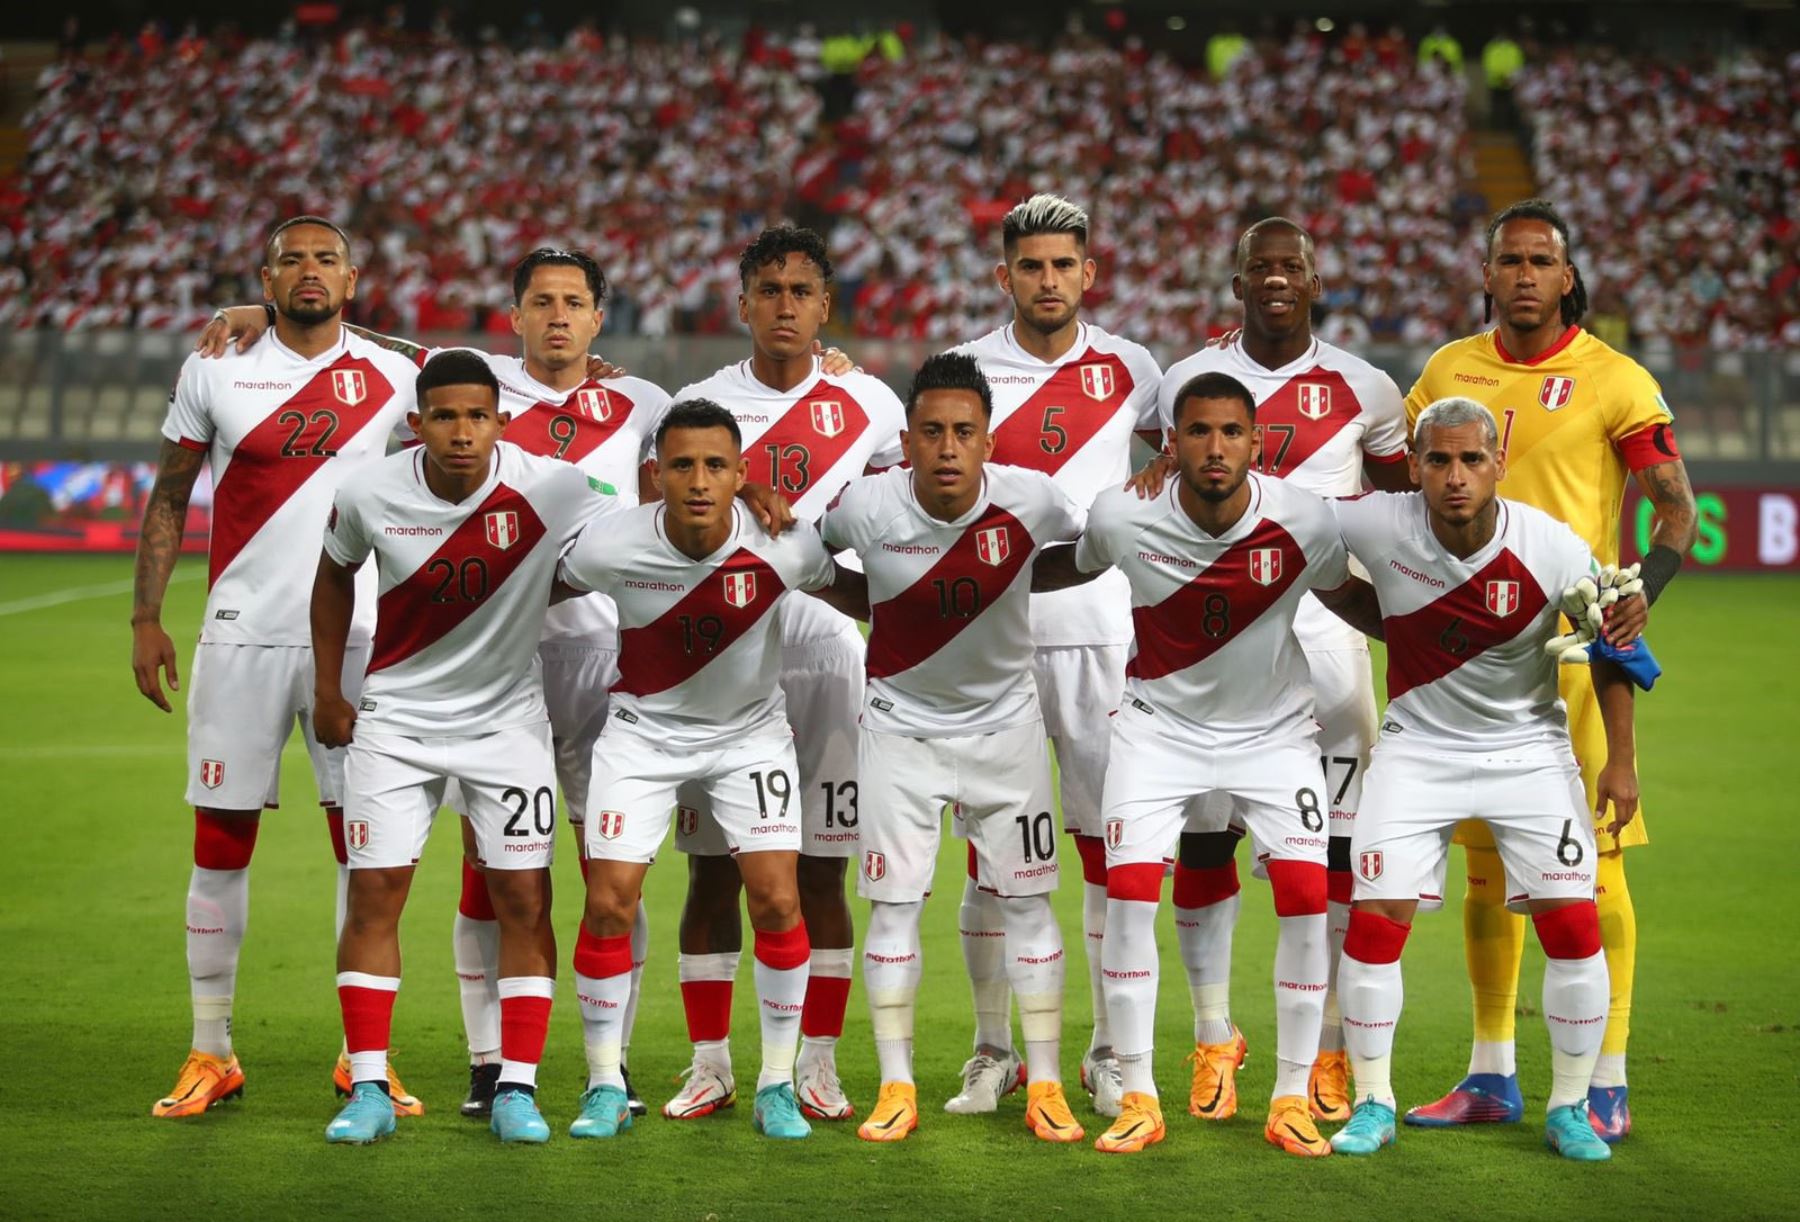 Lo que se le viene a la selección peruana El Emprendedor